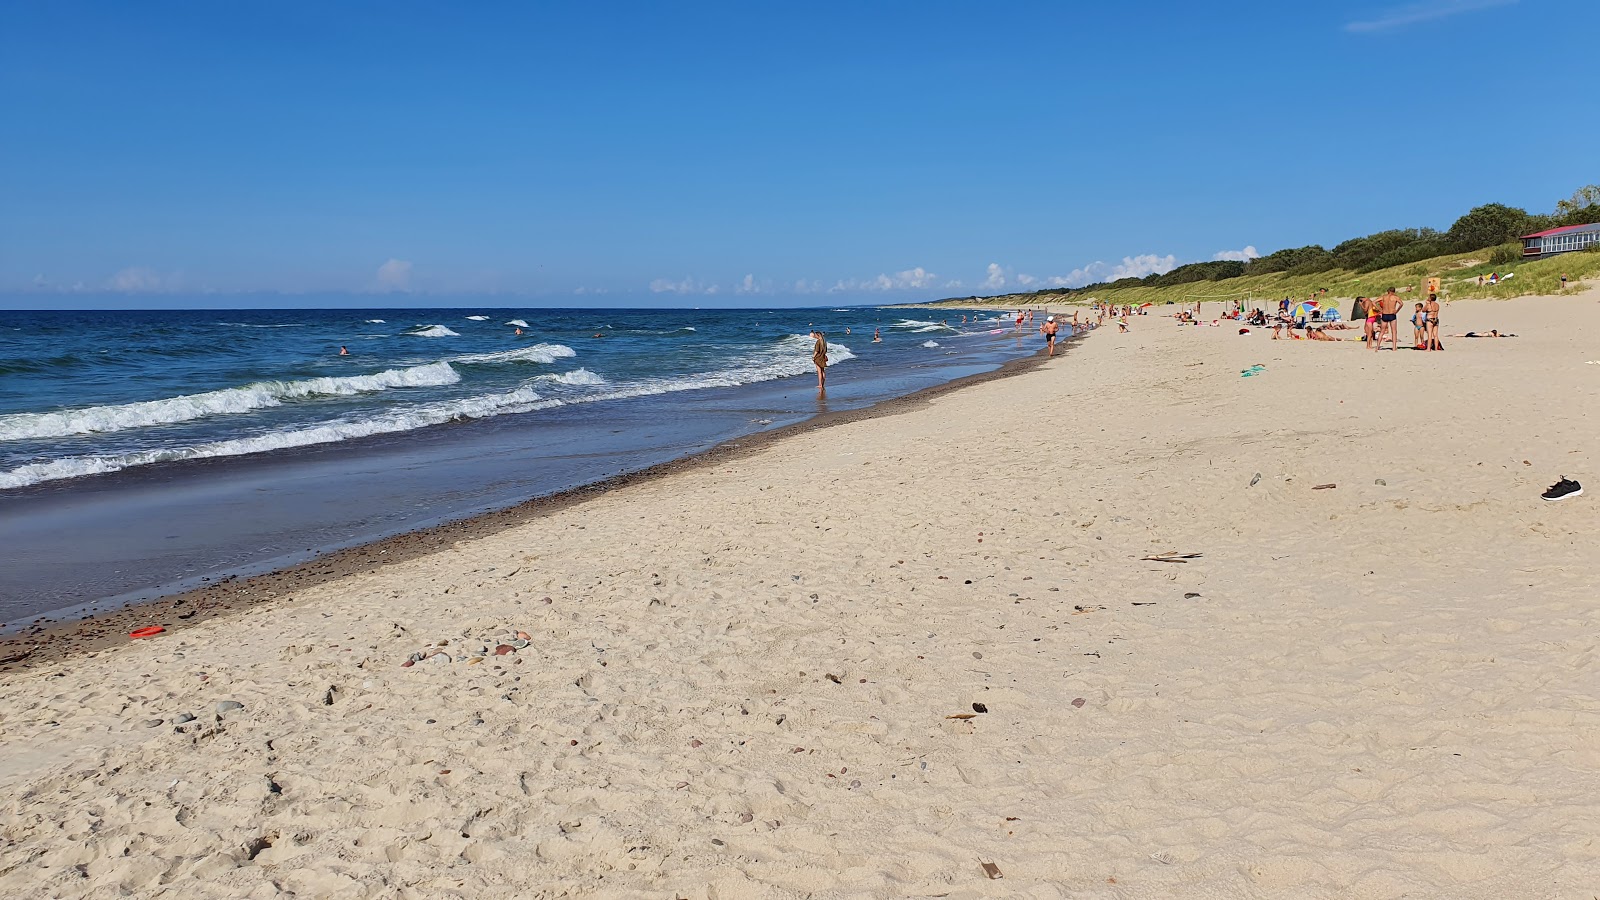 Fotografie cu Moryachka beach cu o suprafață de nisip strălucitor